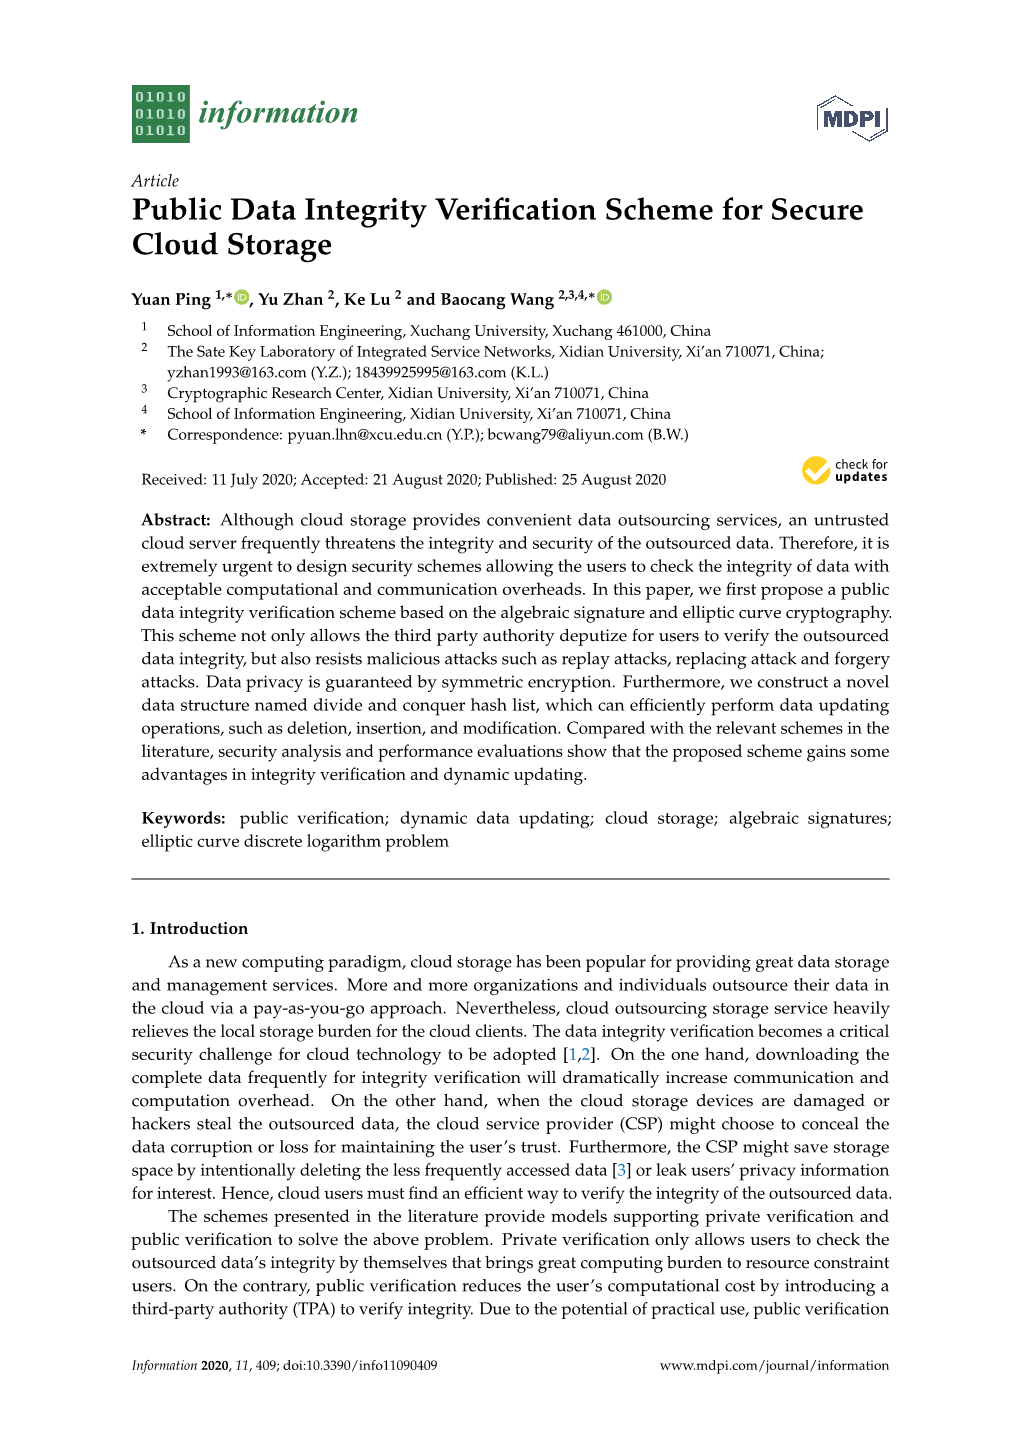 Public Data Integrity Verification Scheme for Secure Cloud Storage